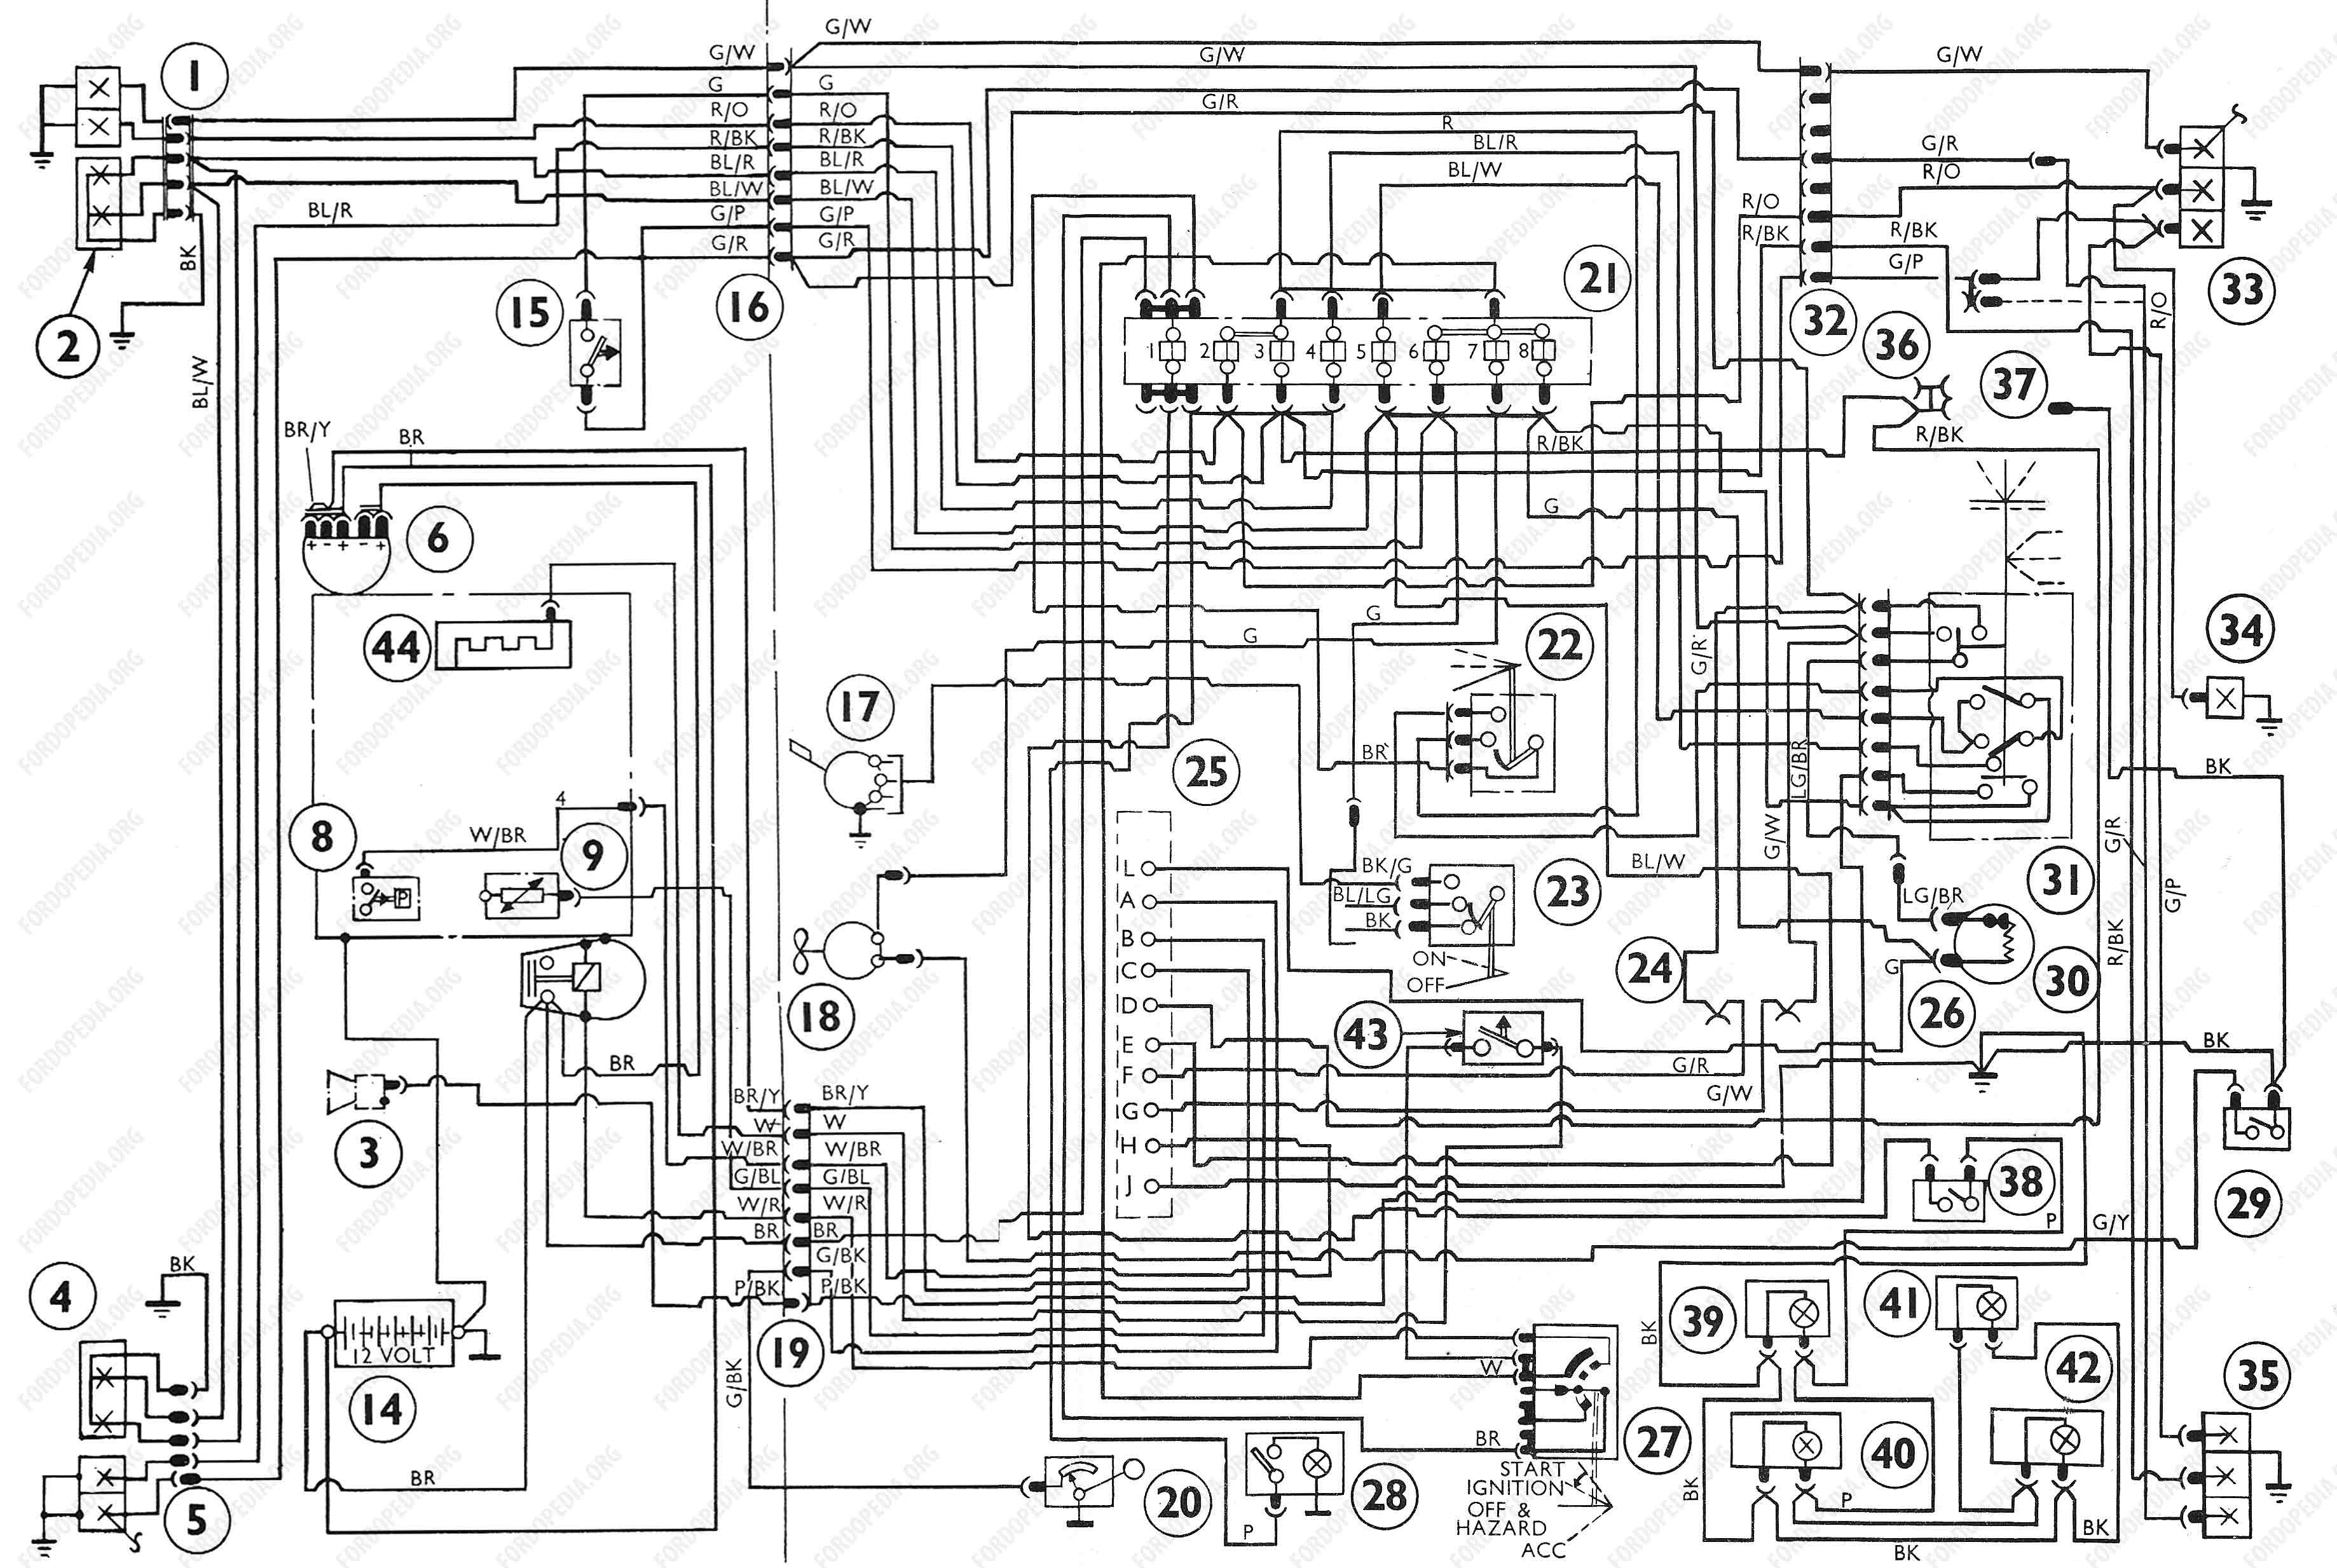 Ford F800 Wiring Diagram - Wiring Diagram